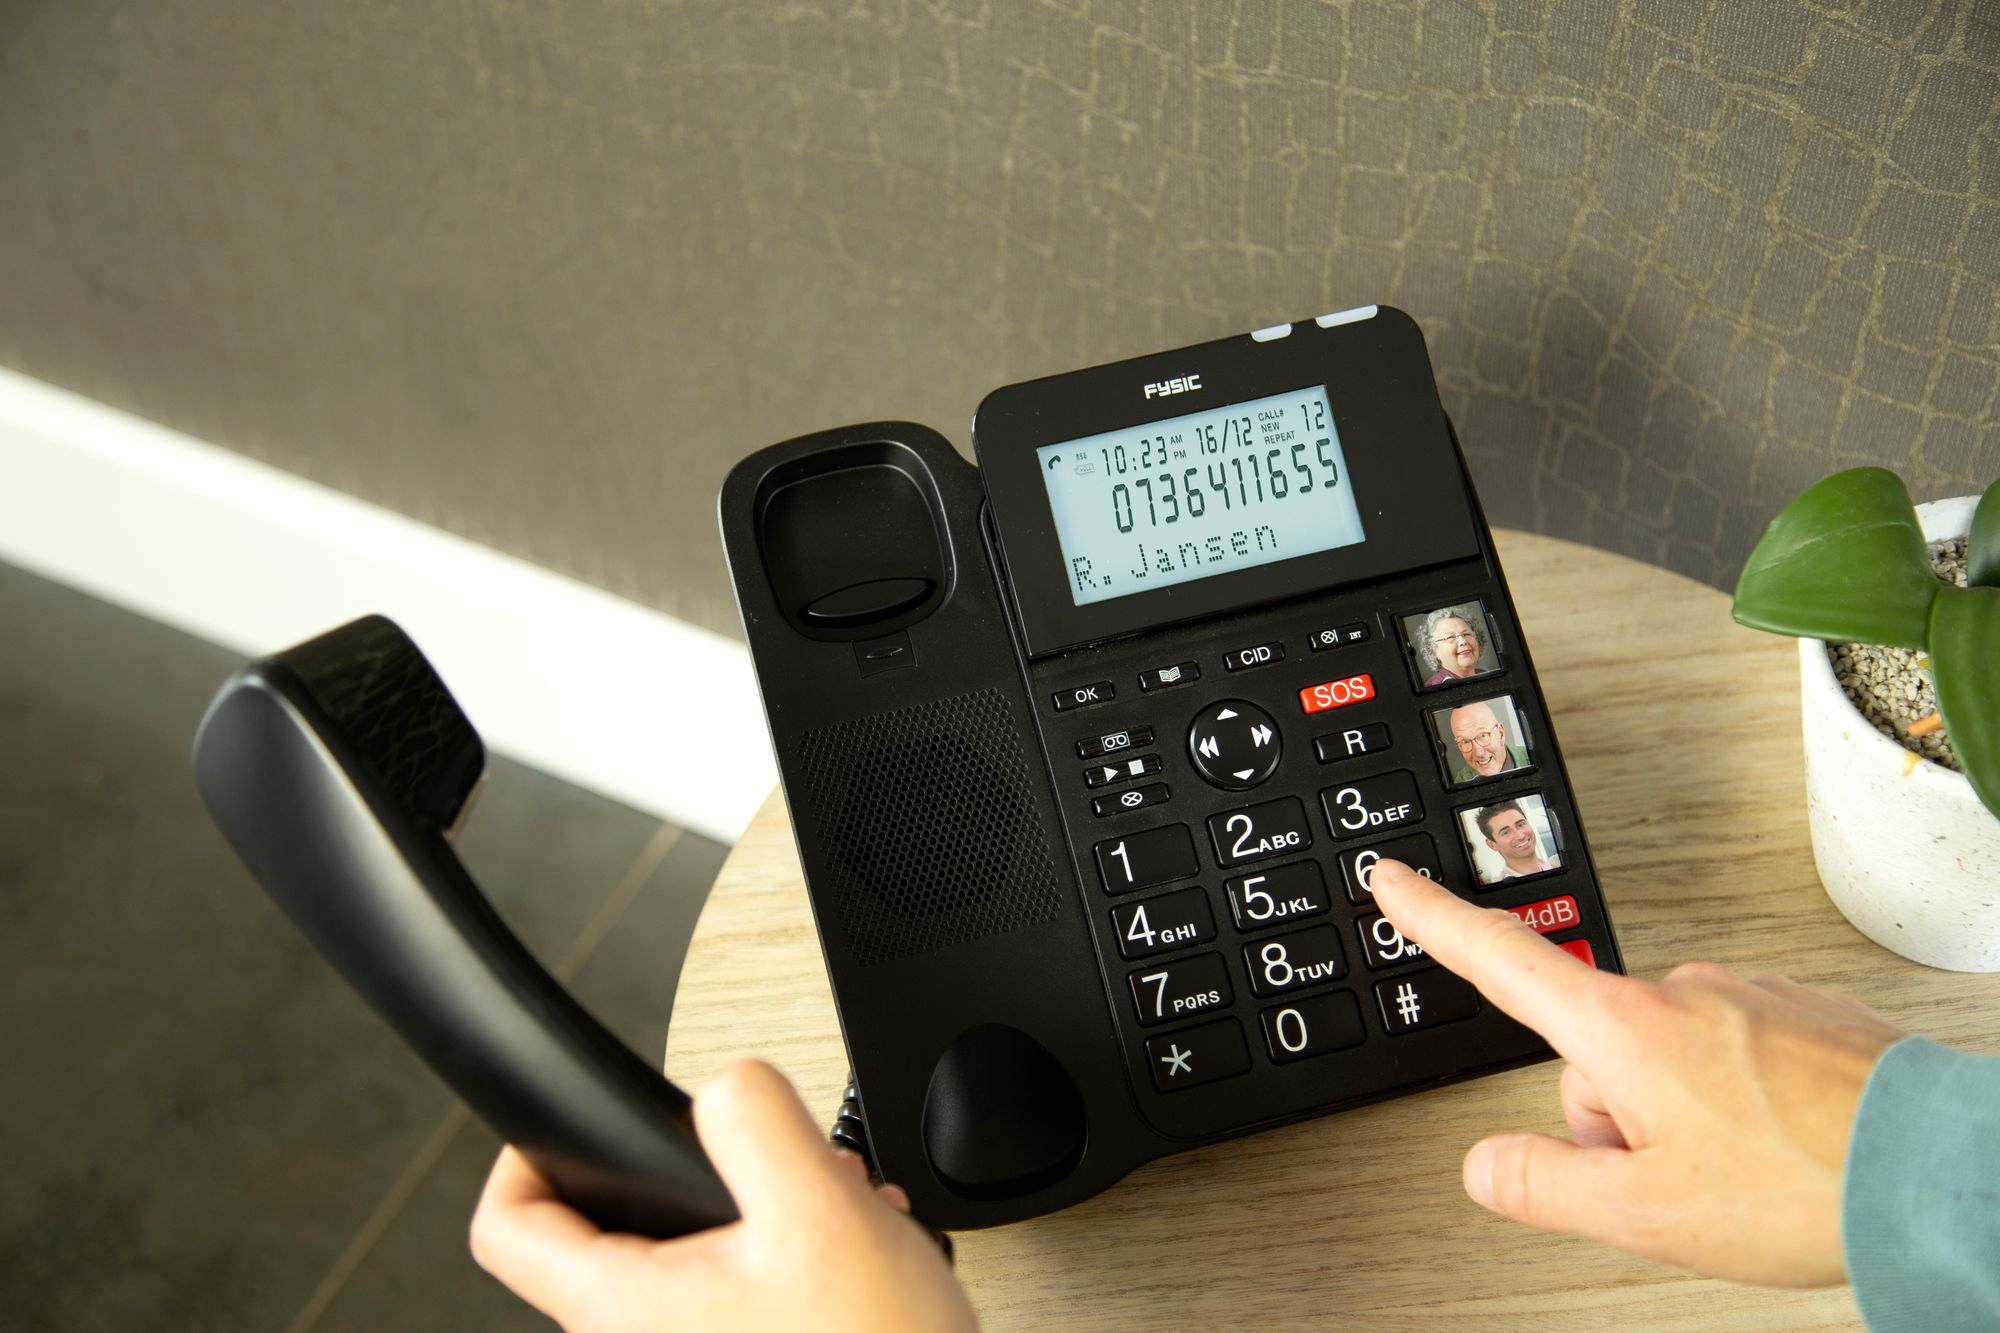 FYSIC FX-8025 - Seniorentelefon mit Handset extra Seniorentelefon mit Klingelverstärker,großen Klingelverstärker und Tasten,SOS-Taste